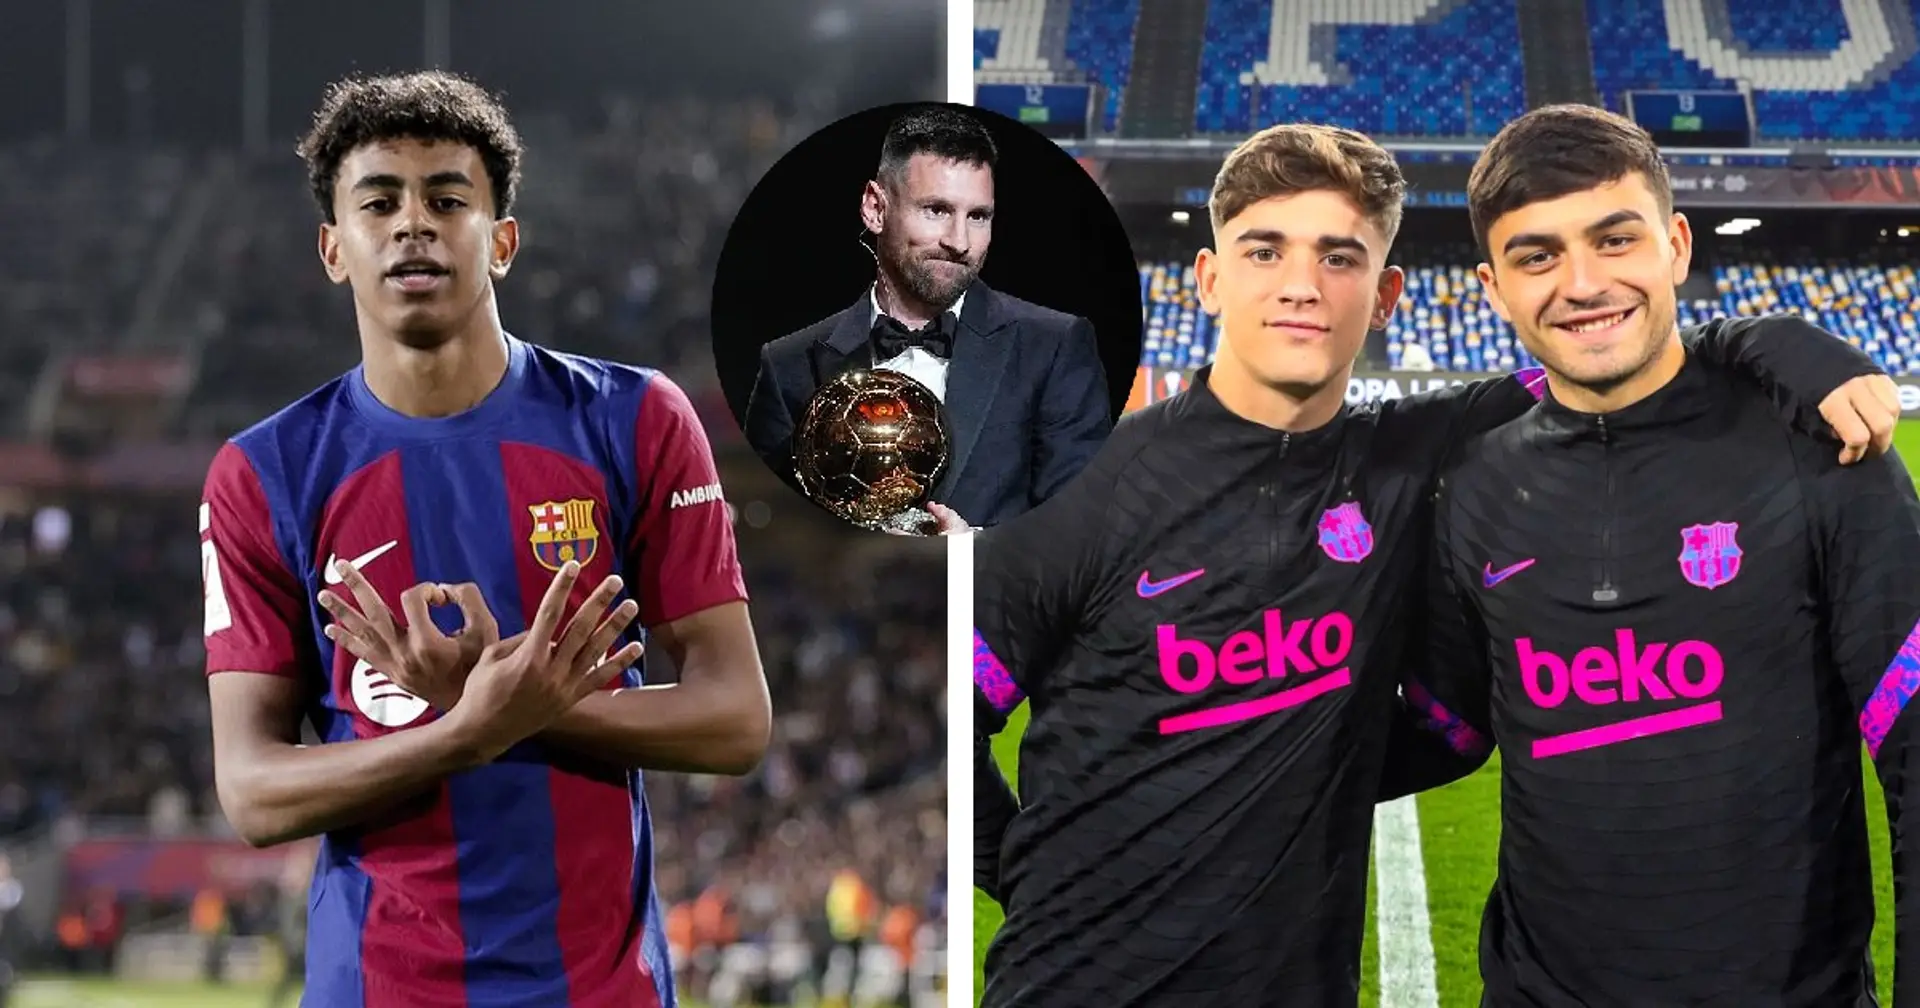 Messi nomme 4 vainqueurs potentiels du Ballon d'Or - UN joue pour le Barça